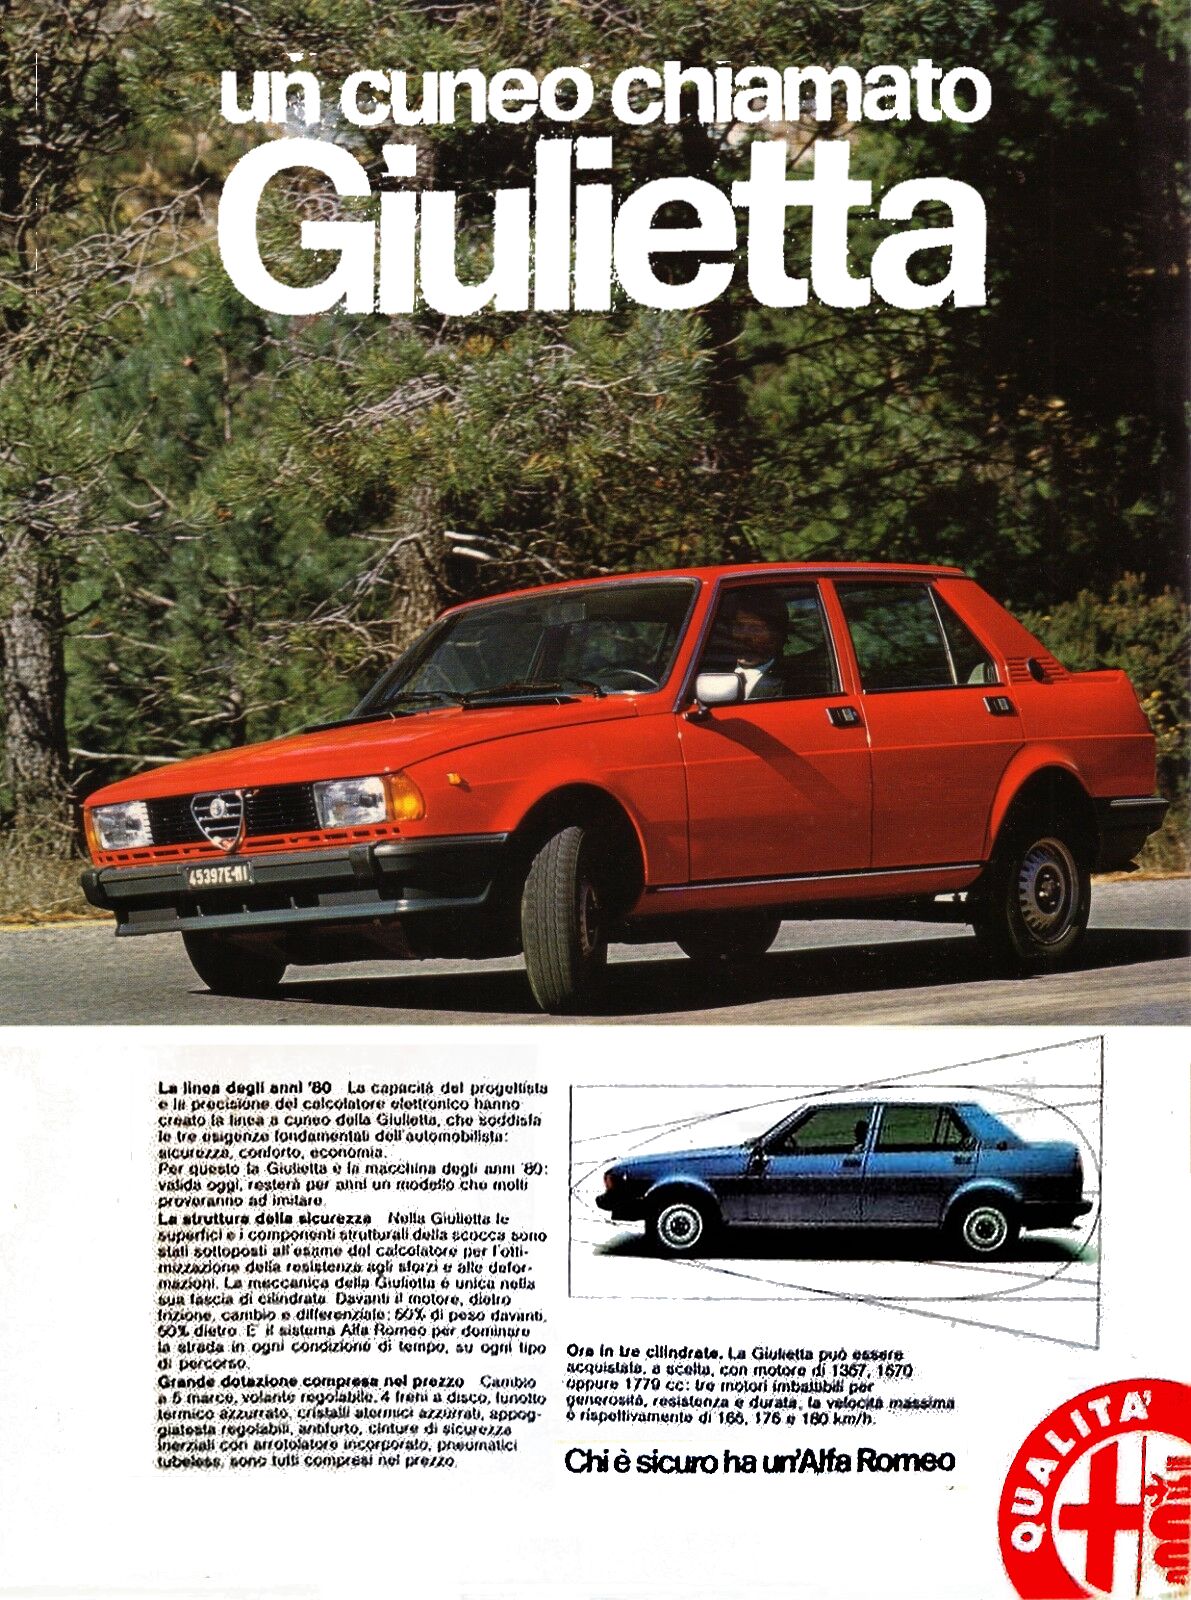 Articolo di giornale anni 80 sulla Alfa Romeo Giulietta